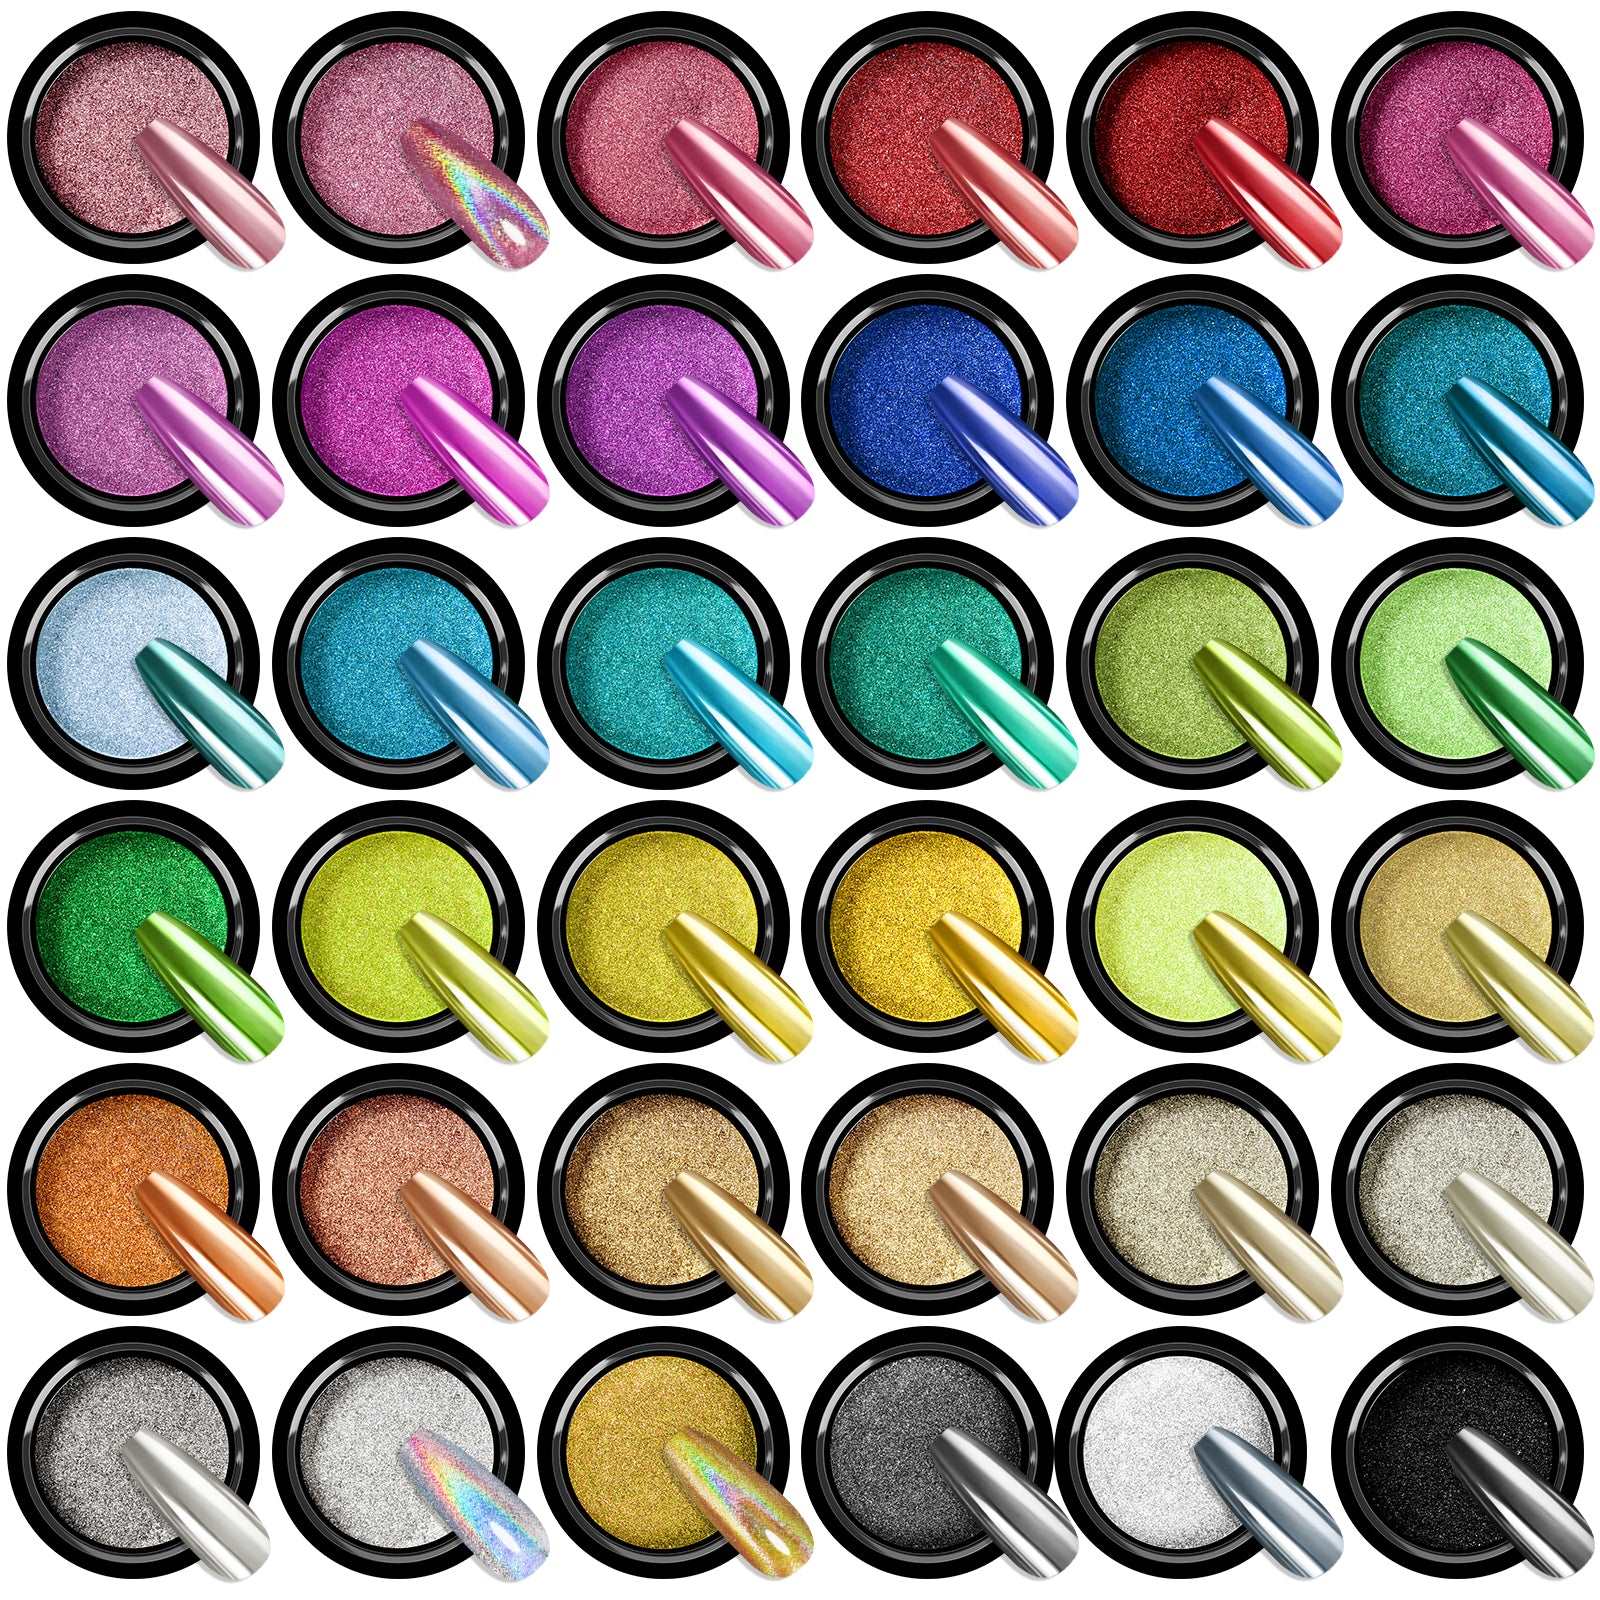 Saviland Solid Chrome Nail Powder Set - 6 Colors Nail Art Powder